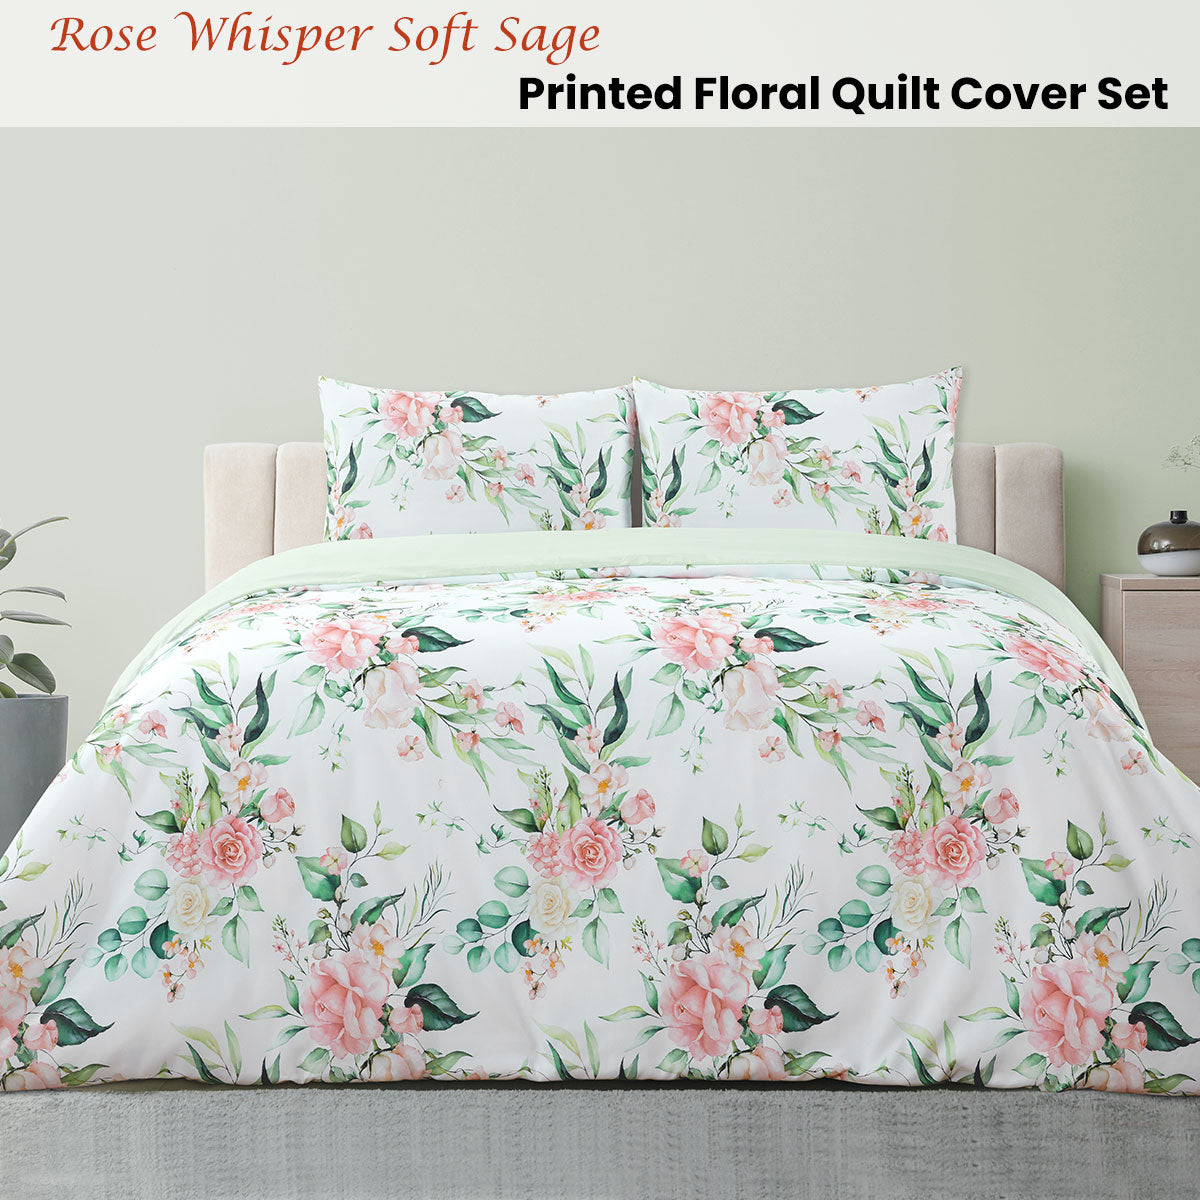 Ardor Rose Whisper Soft Sage Printed Floral Double Quilt Cover Set